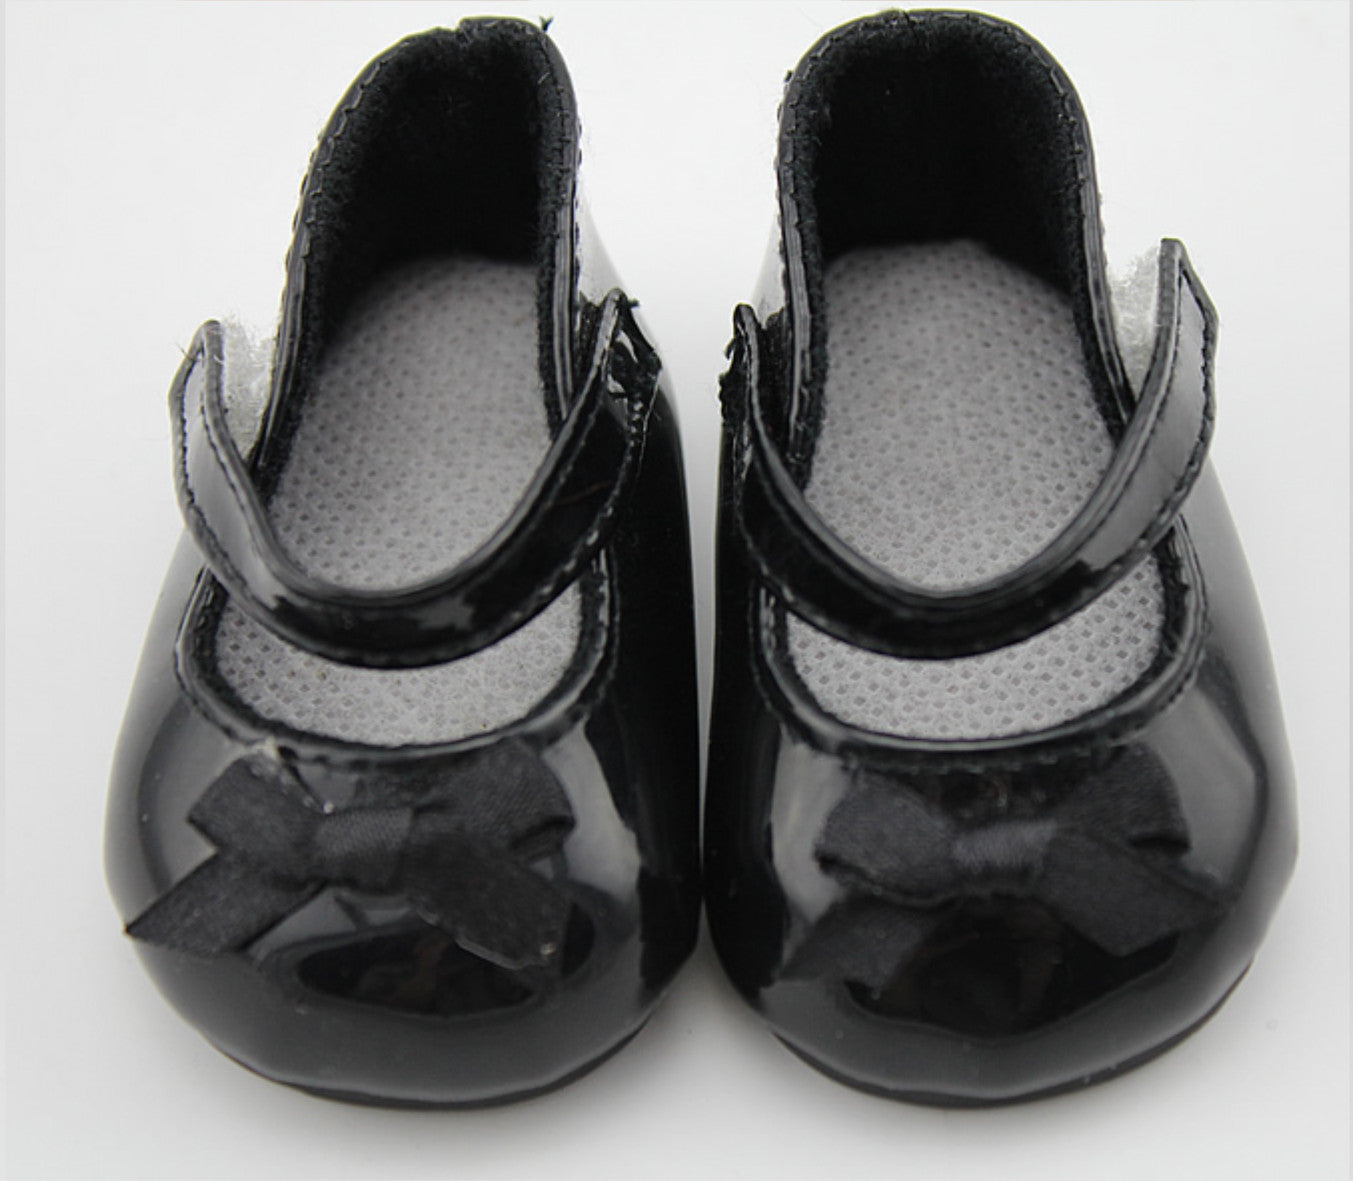 Patent black shoes